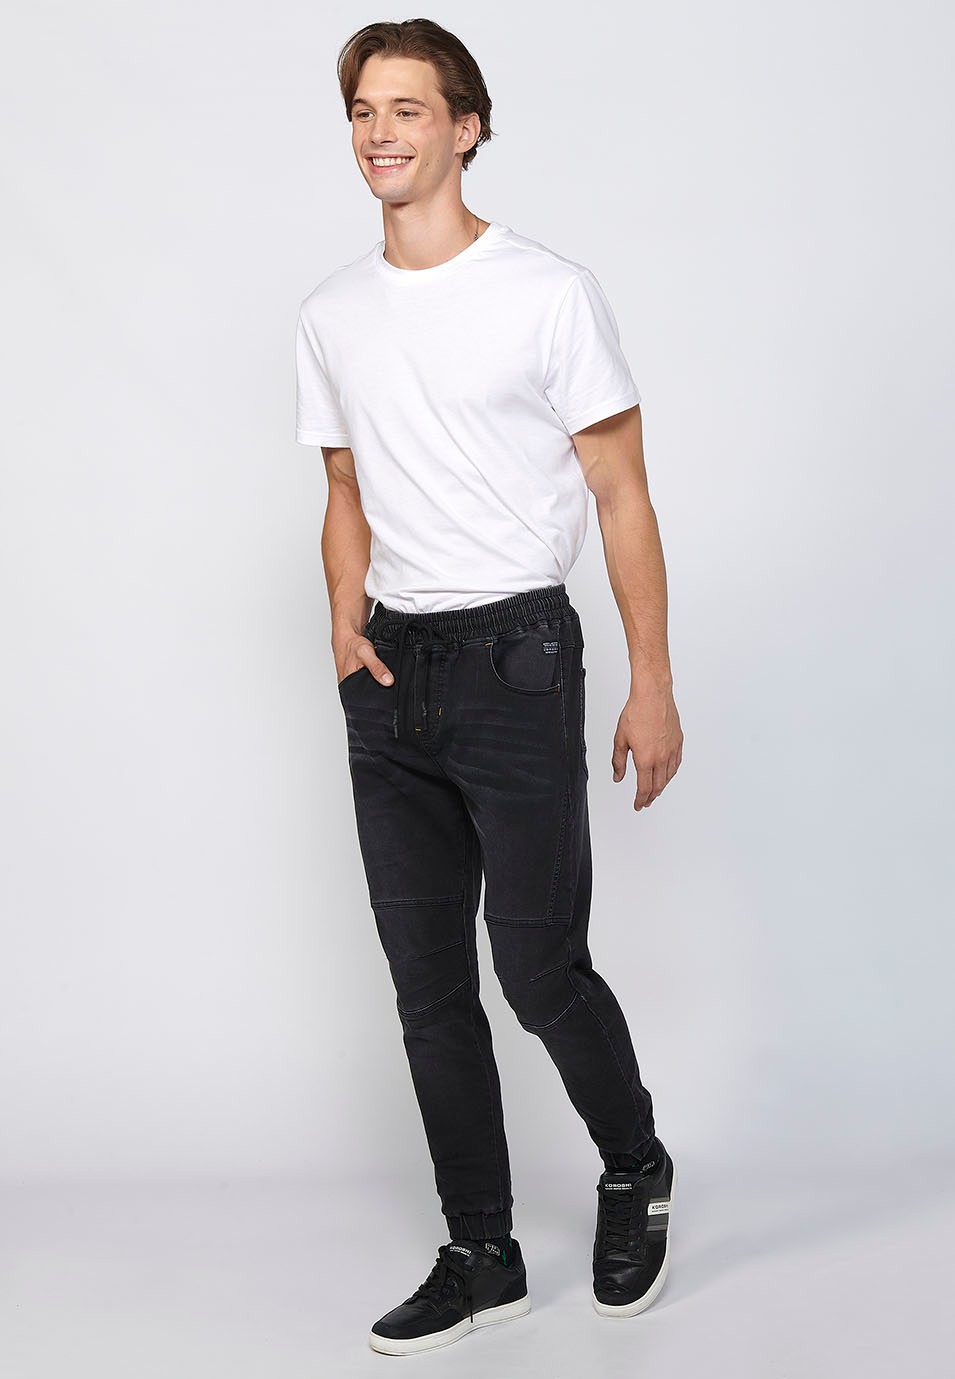 Pantalón largo jogger slim ajustado en tobillos con cintura ajustable con goma y cordón color Negro para Hombre